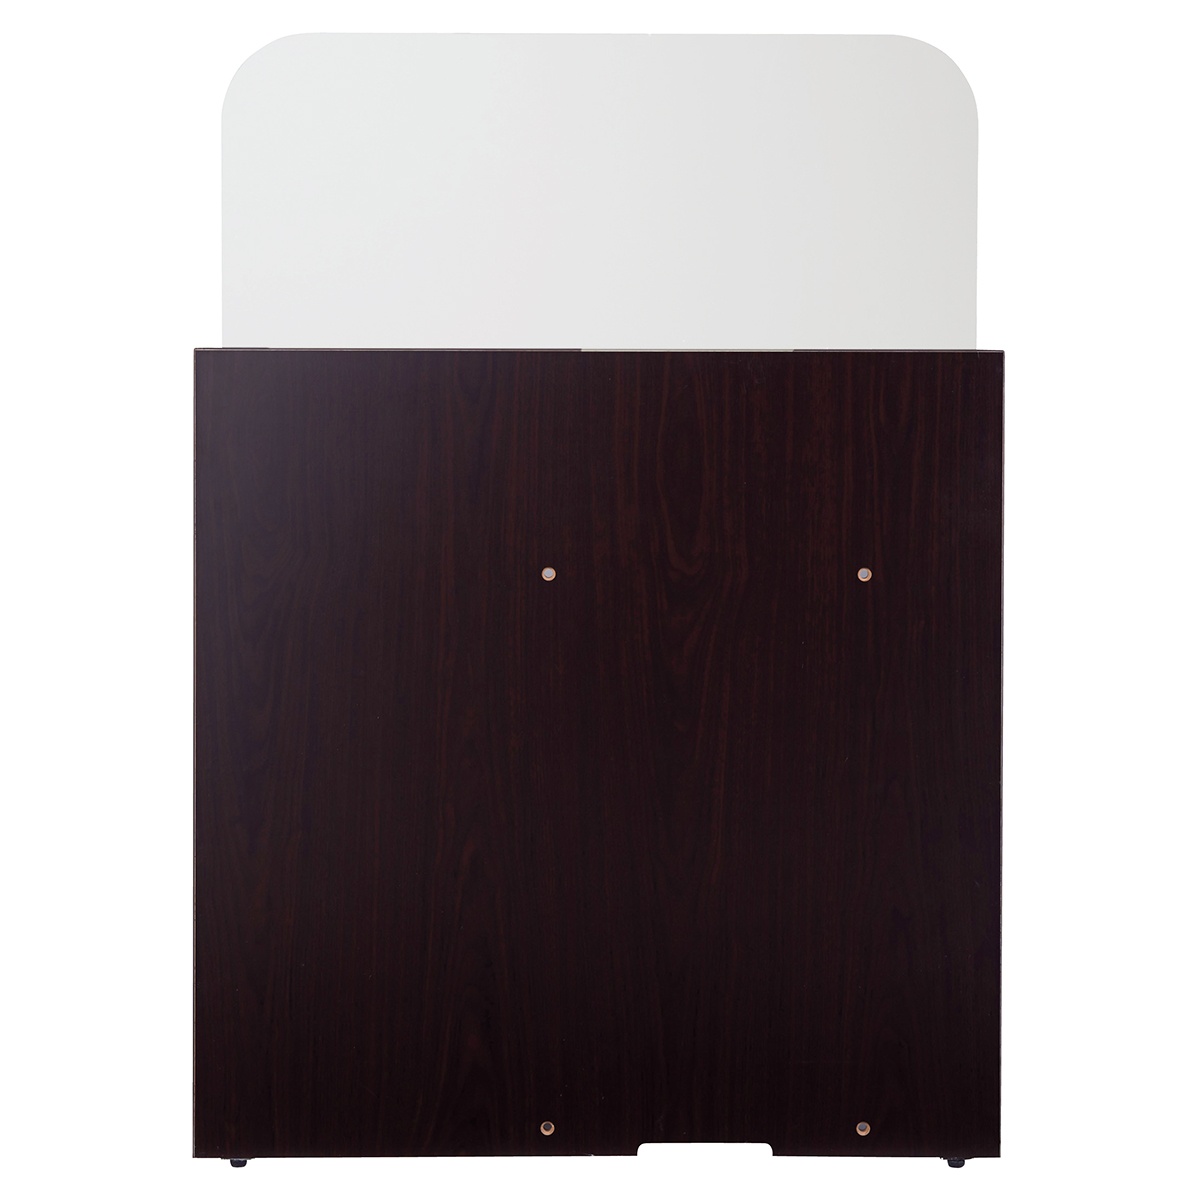 木製ローカウンター H70cm W90cm エクリュ 1台組み合わせ自在のレジ台カウンター。付属のネジで隣の本体同士を連結し、一体型としてご使用いただけます。コード穴があります。レジカウンター おしゃれ 受付カウンター レジ台